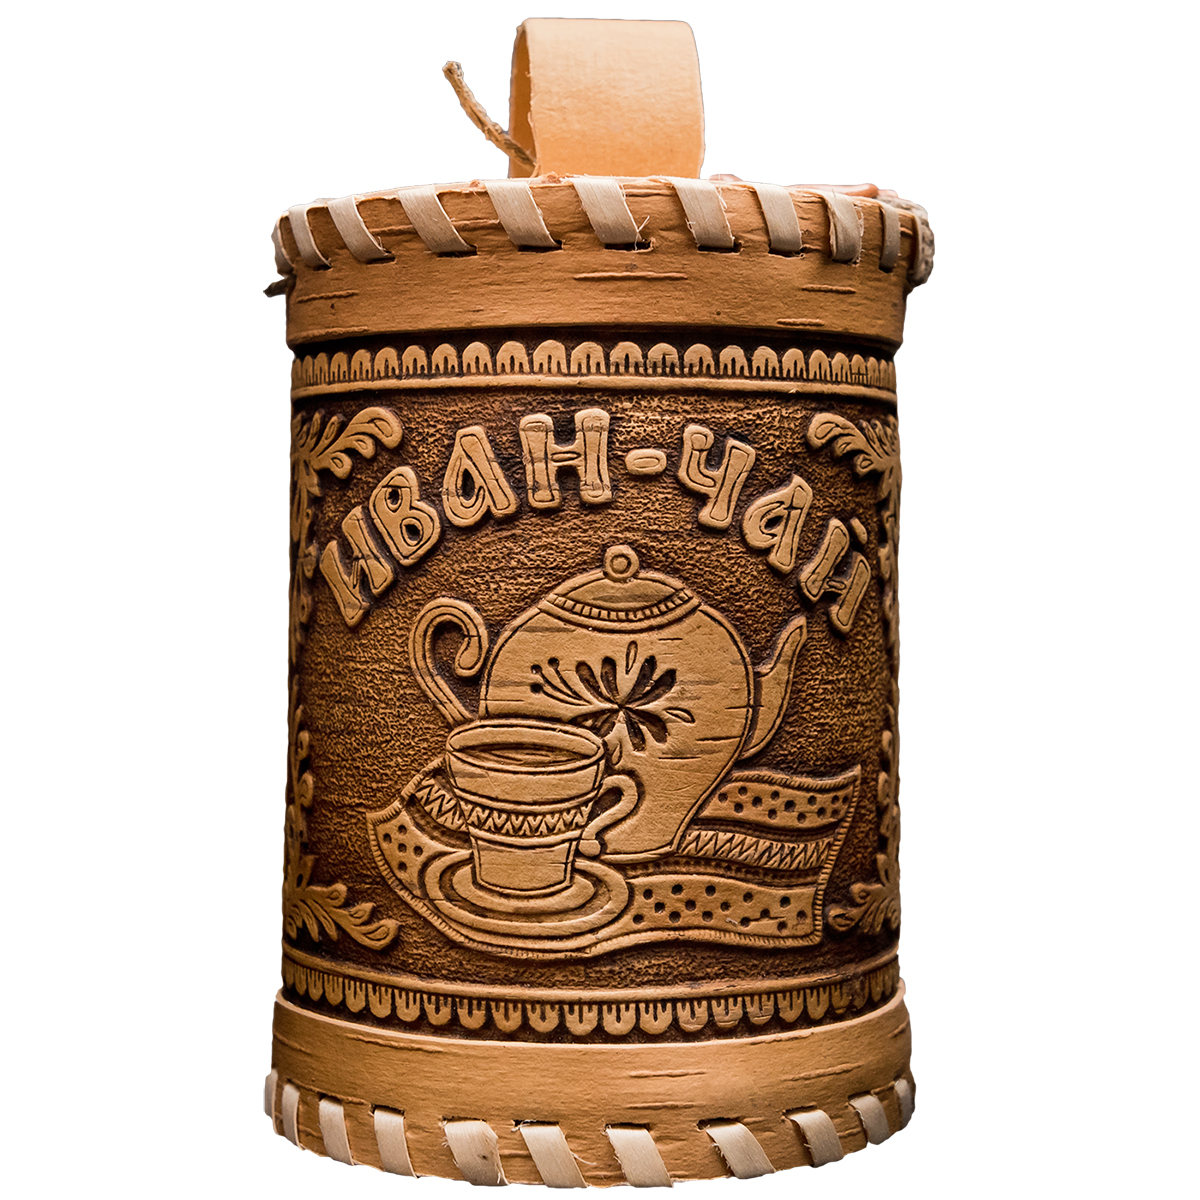 Чай Емельяновская Биофабрика иван-чай в подарочном берестяном туеске 50 гр. - фото 1